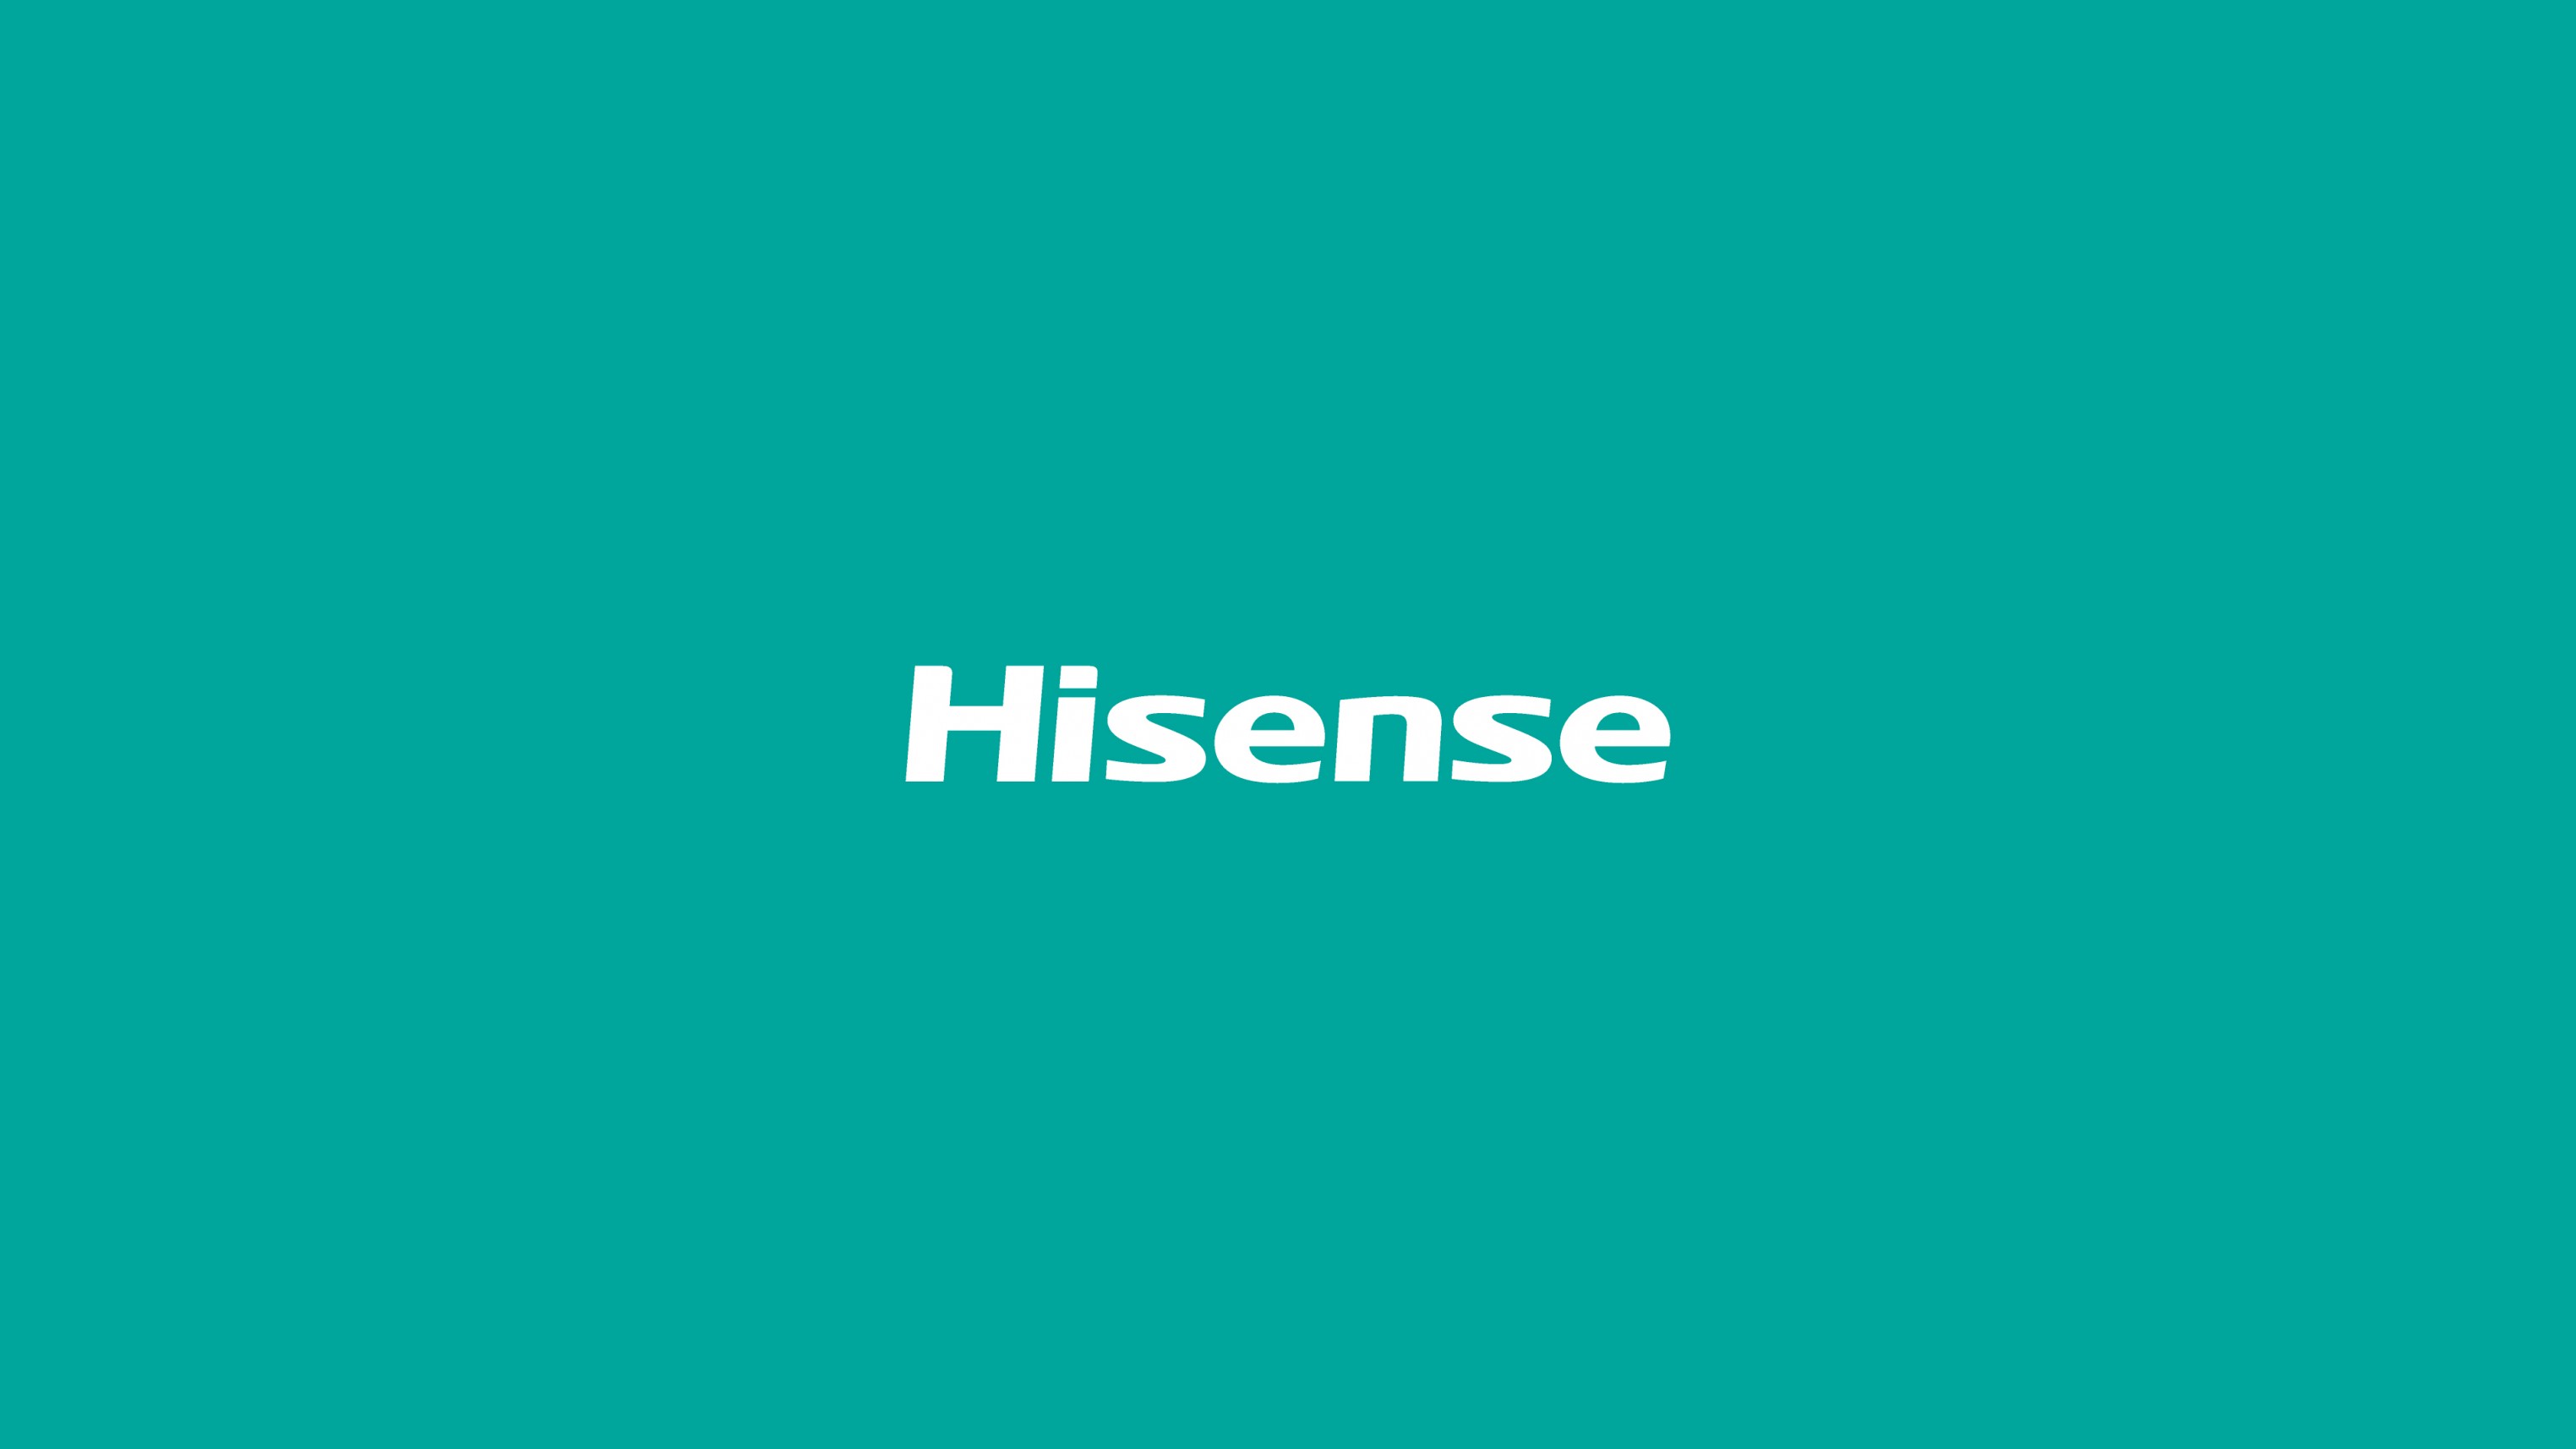 Company Hisense Usa